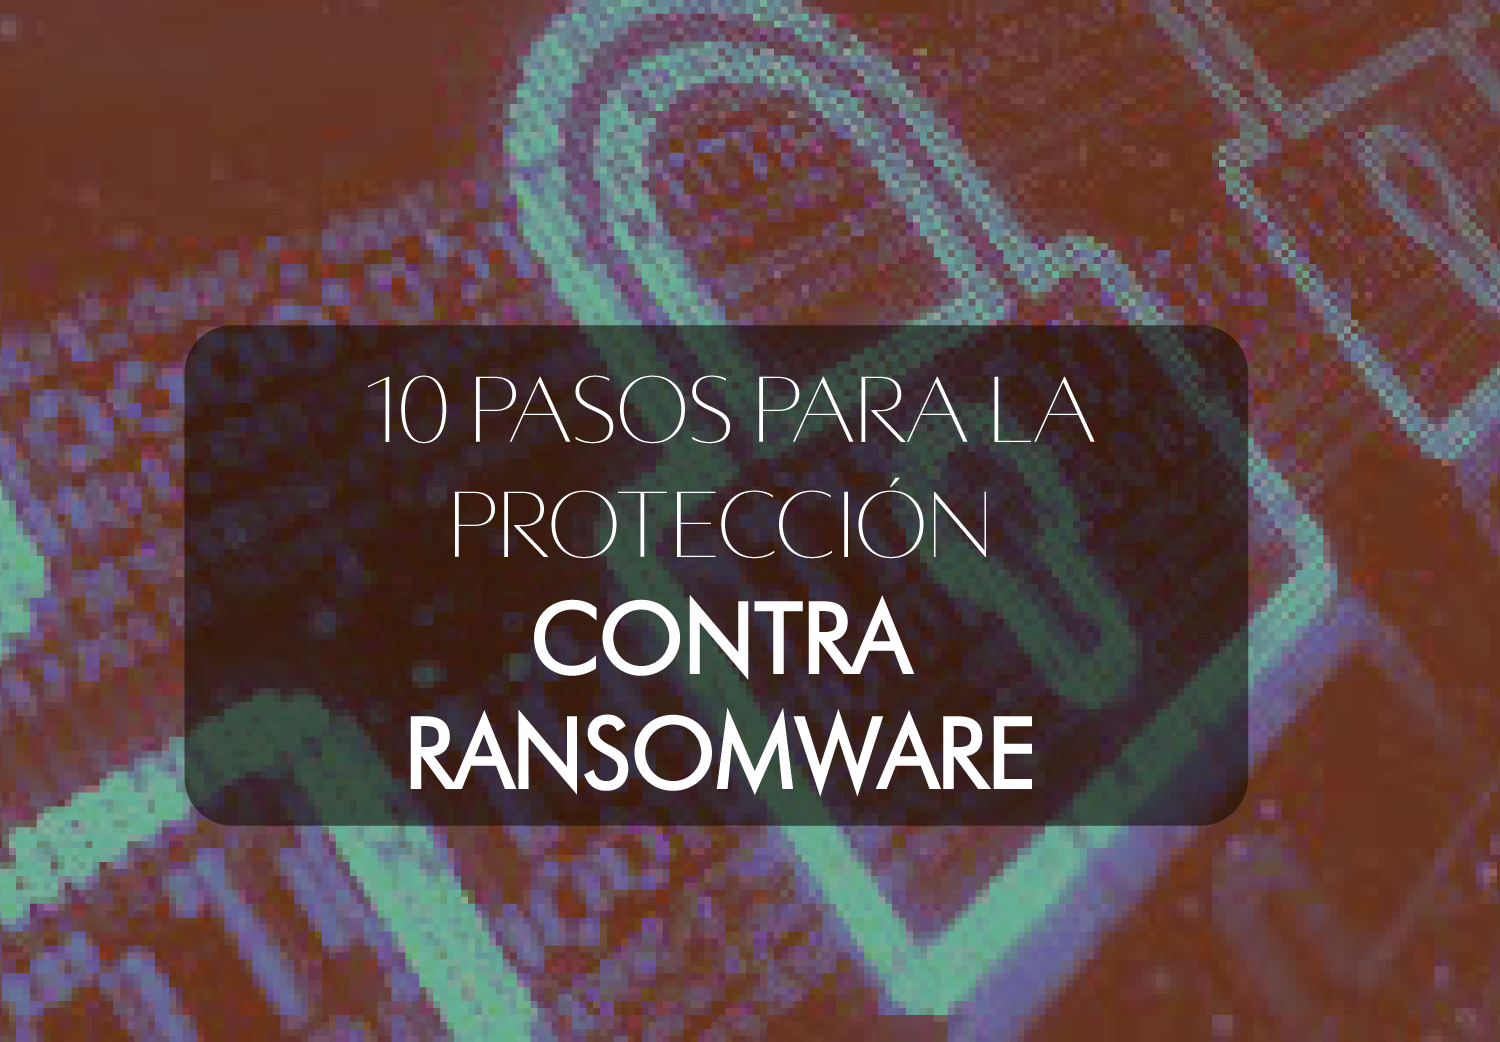 10 pasos para la protección contra ransomware